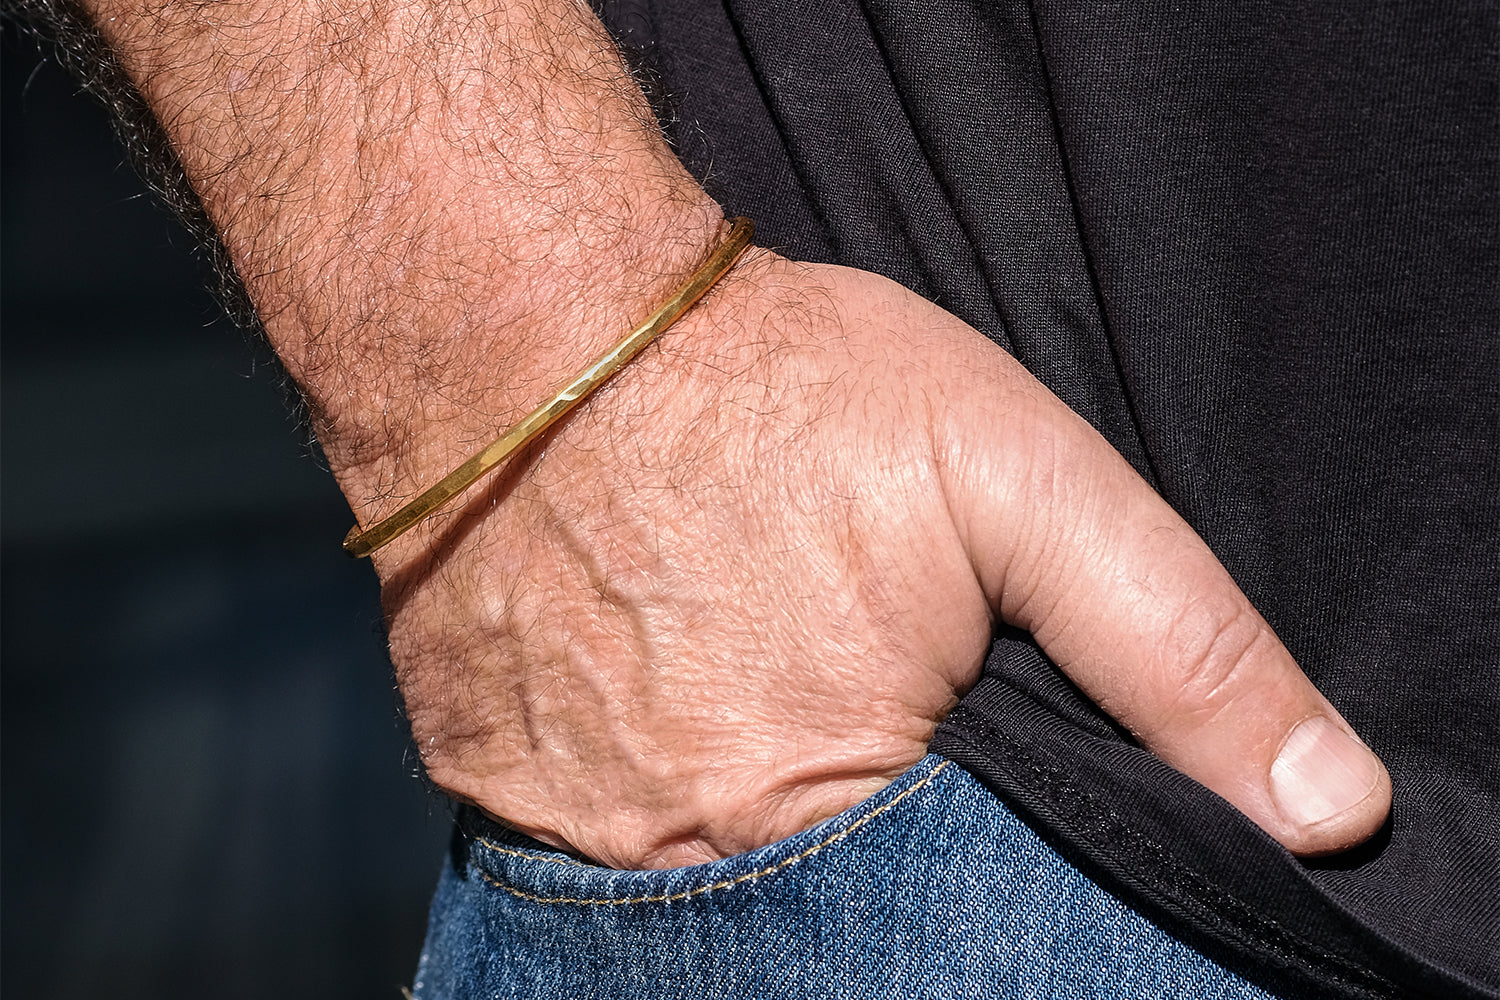 Thin Gold Bracelet For Men - Rectangular Design